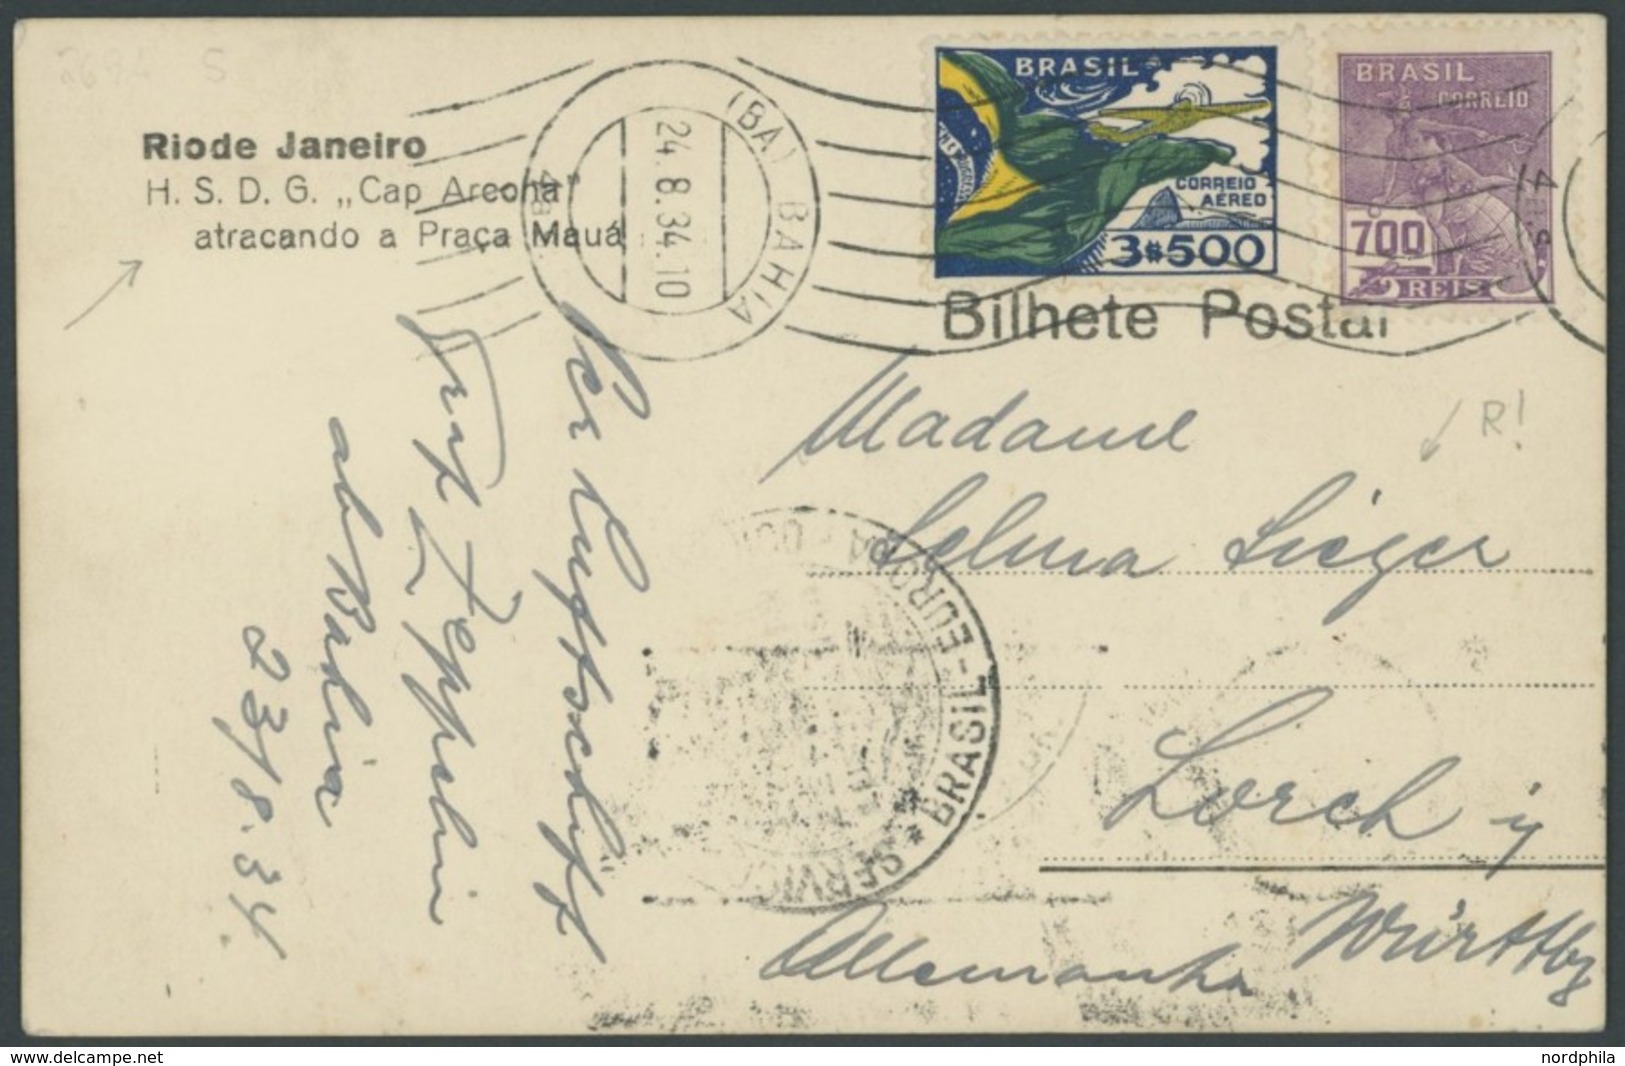 ZEPPELINPOST 269A BRIEF, 1934, 6. Südamerikafahrt, Brasilianische Post, Prachtkarte - Airmail & Zeppelin